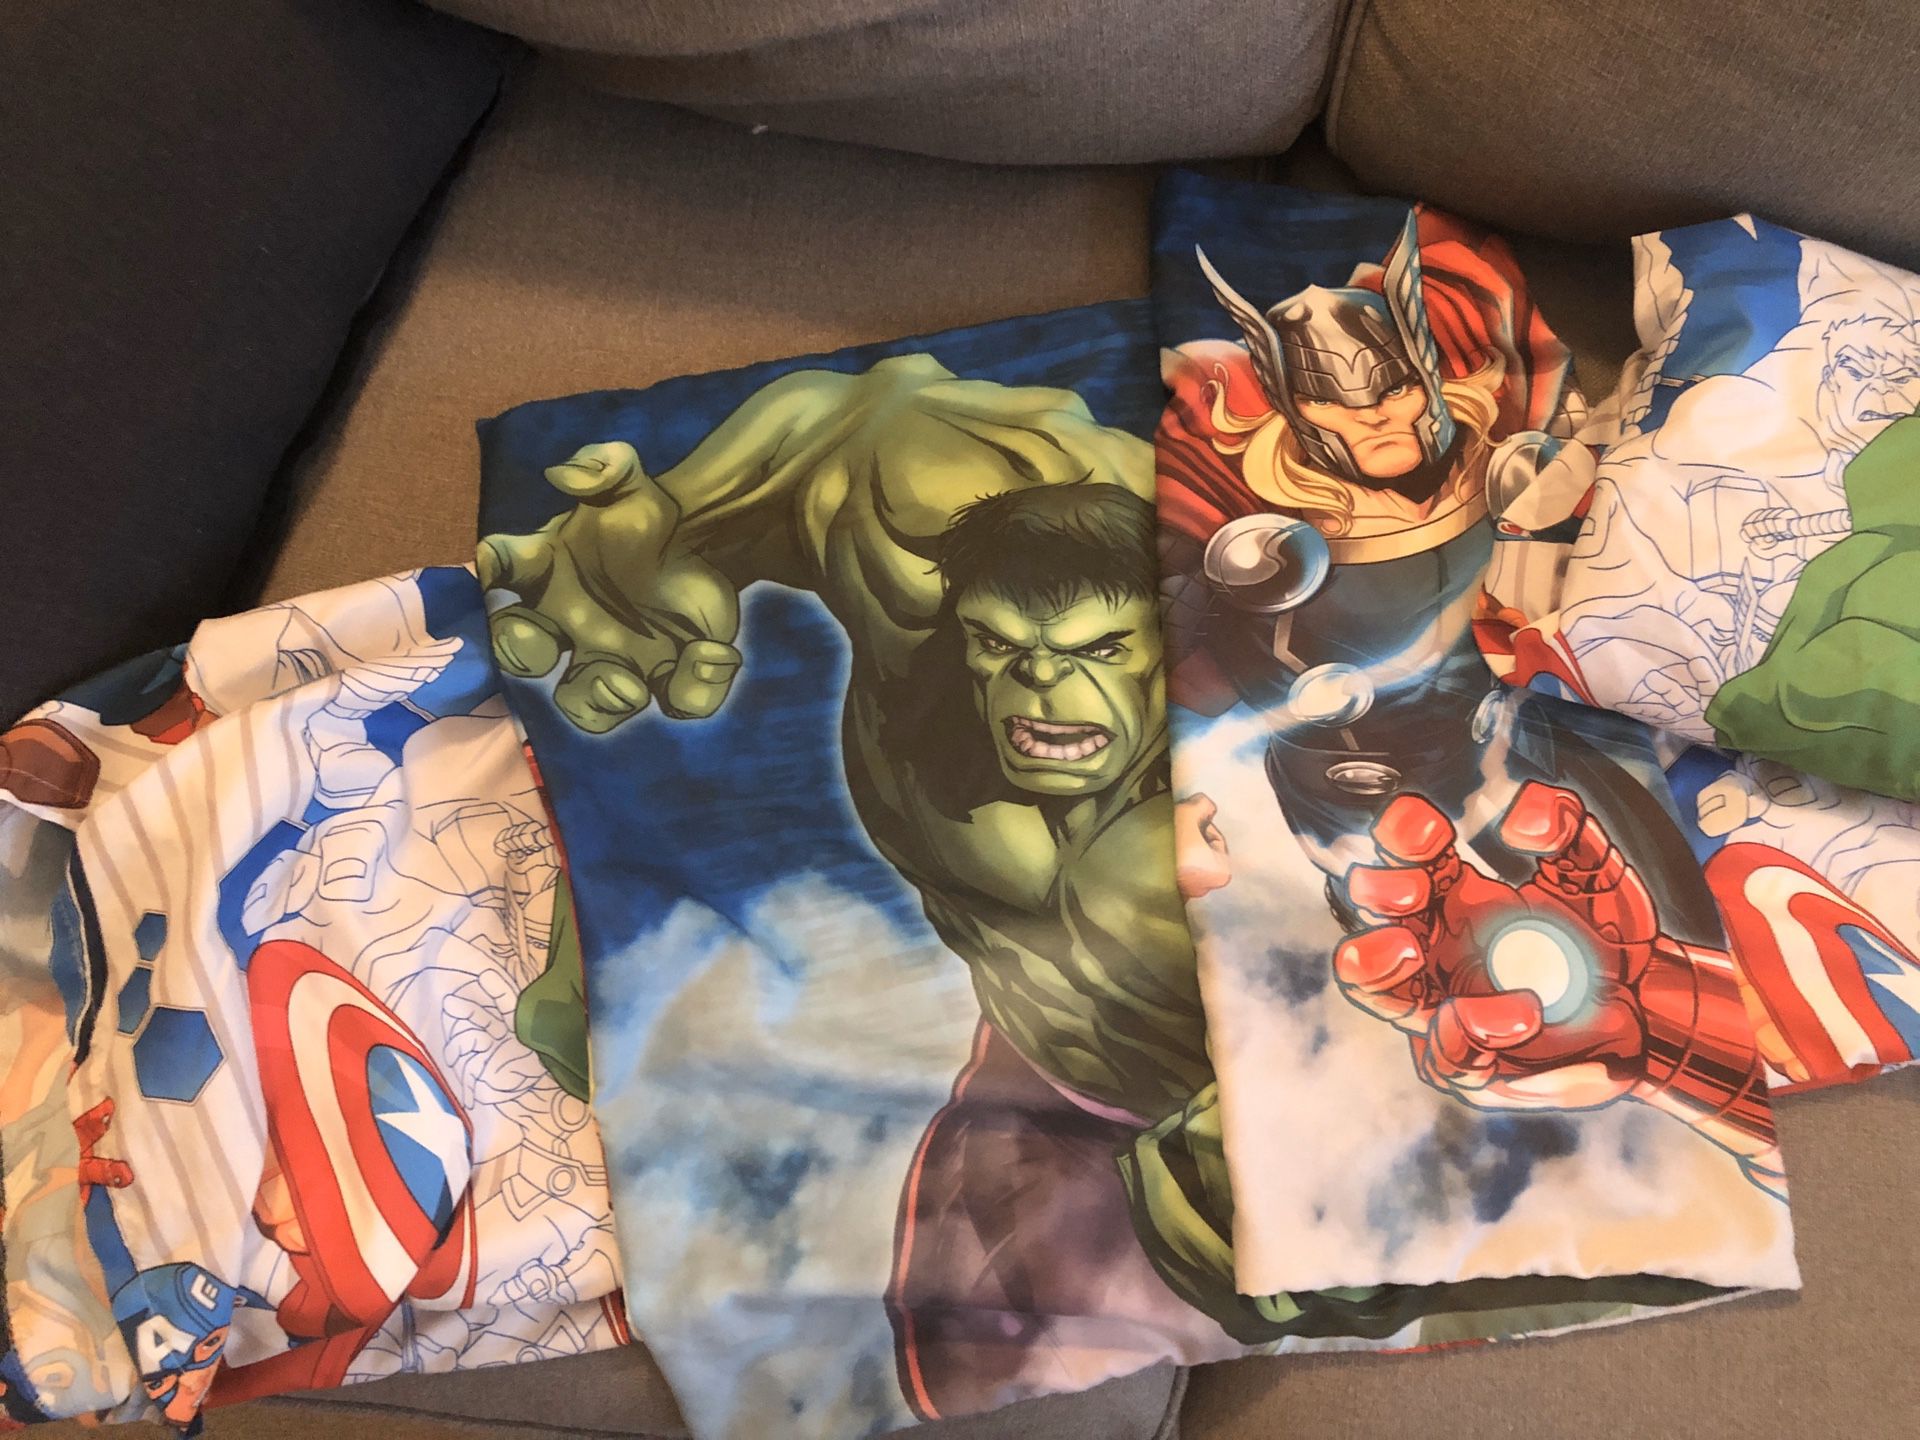 Avengers sheet set